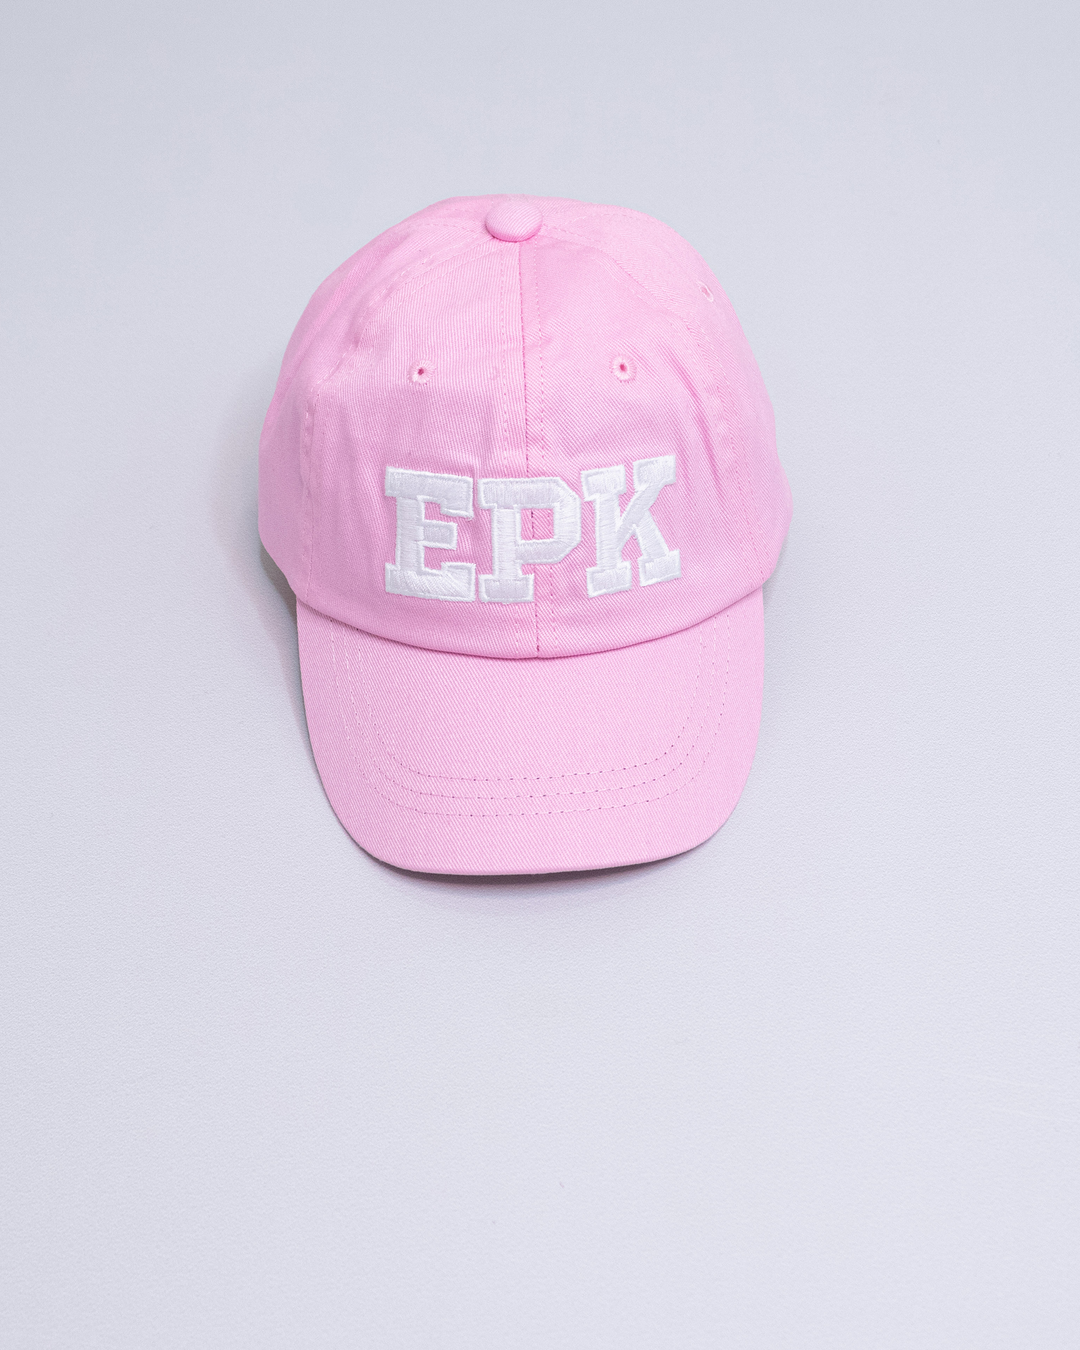 Gorra rosada con el logo EPK